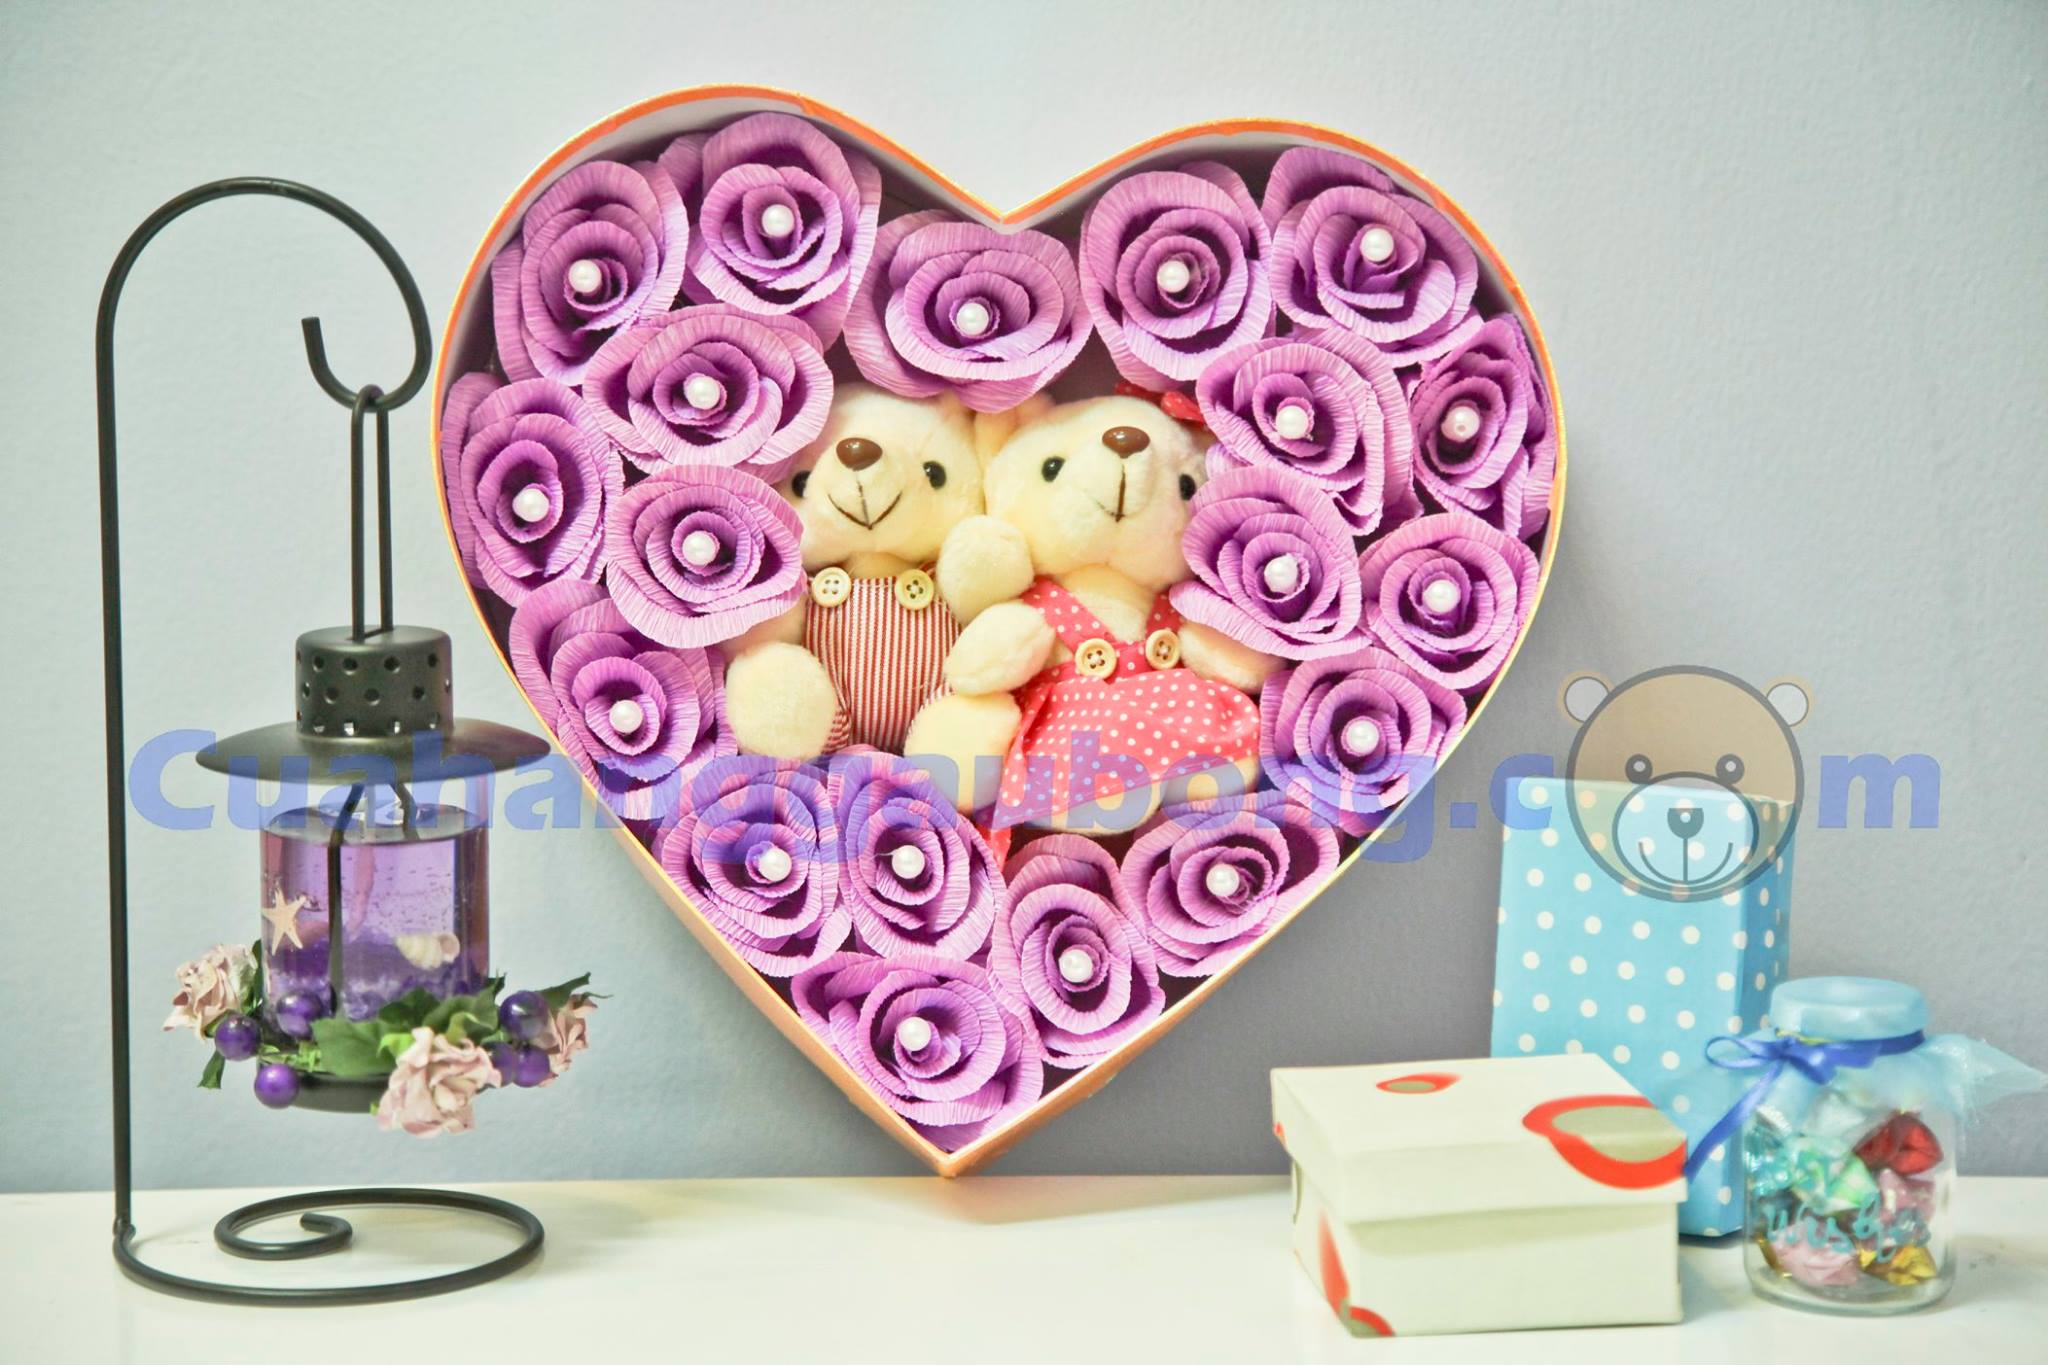 Gấu bông giá sỉ - Chinh phục trái tim nàng bằng hộp hoa gấu bông